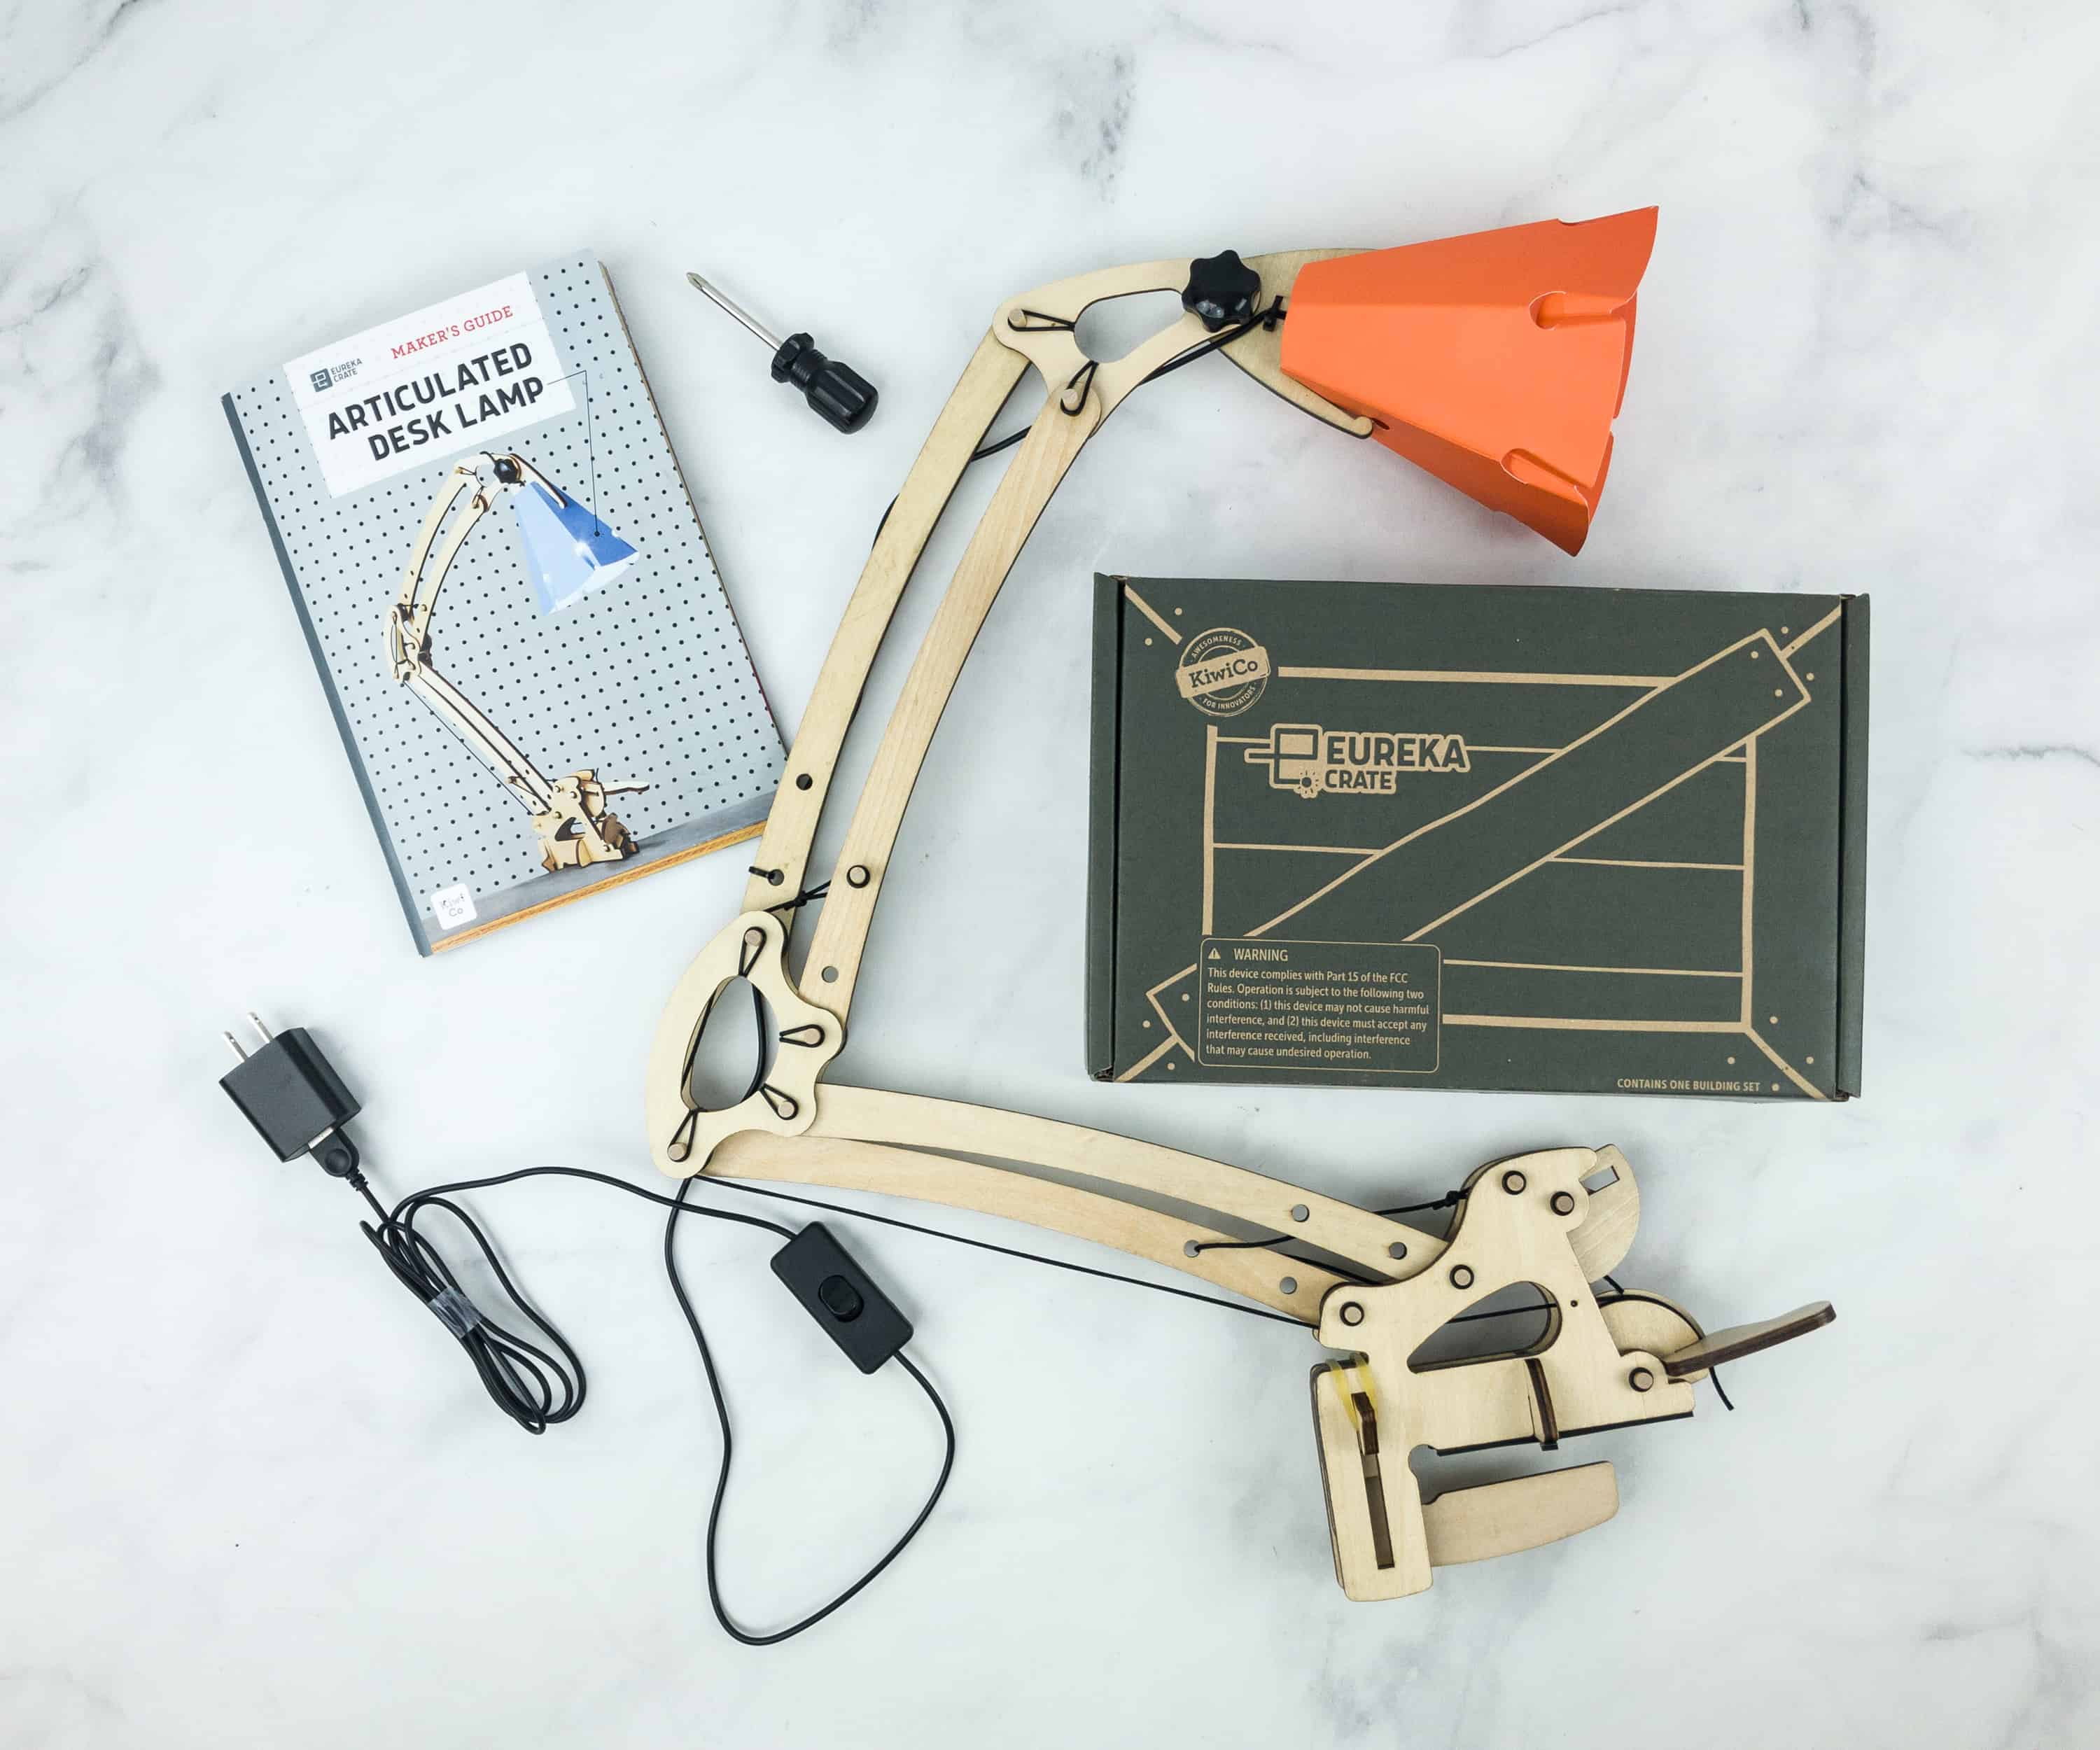 Eureka Crate Review, Articulated Desk Lamp Kit